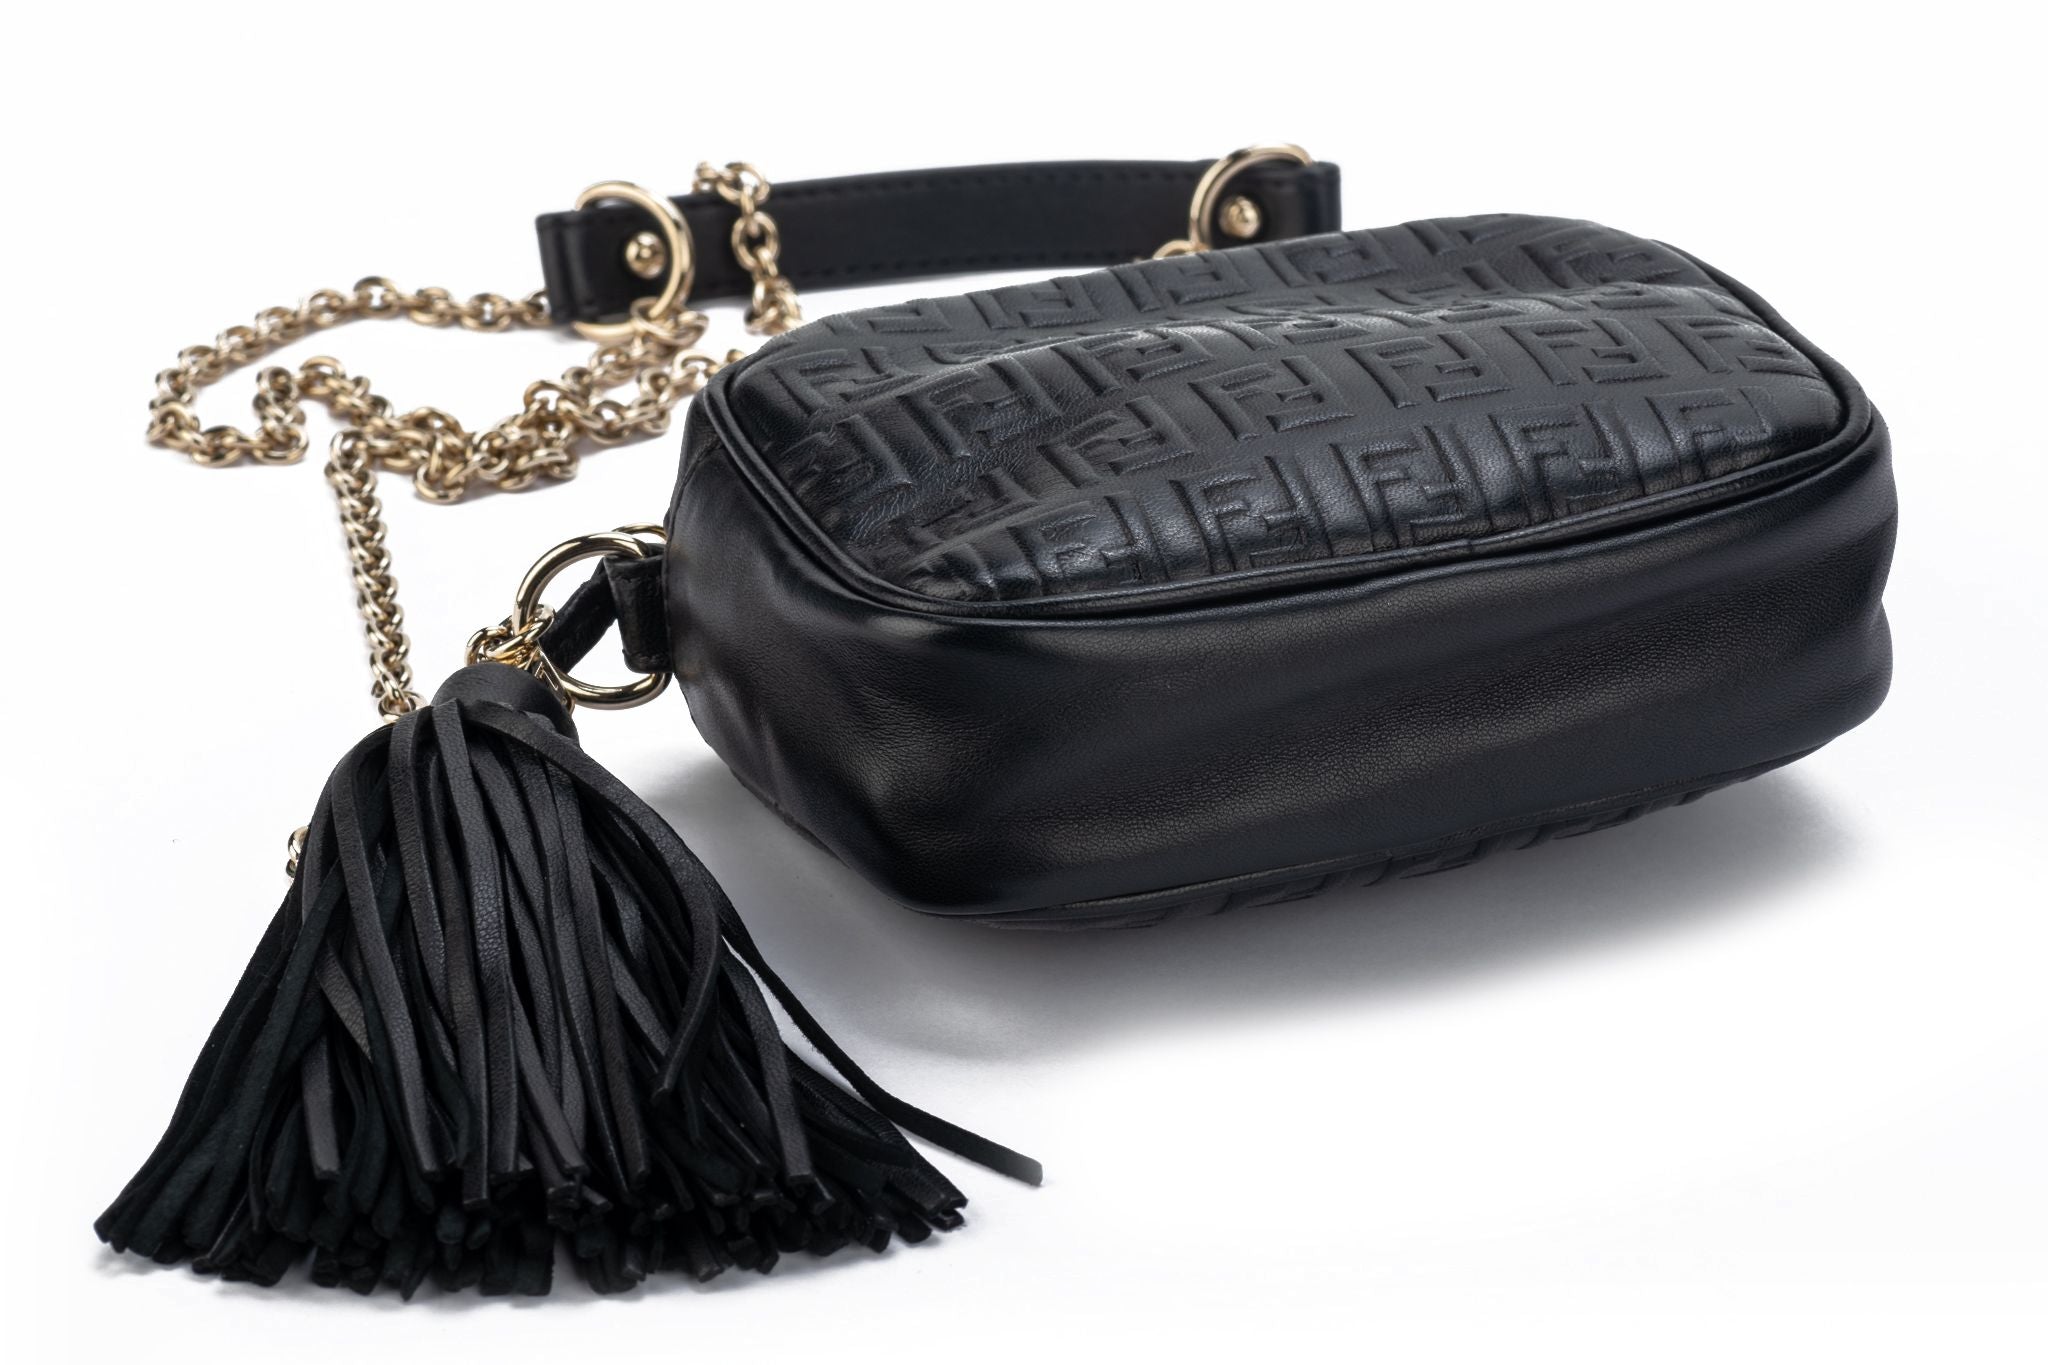 FENDI Handbag BAGUETTE in black/ white